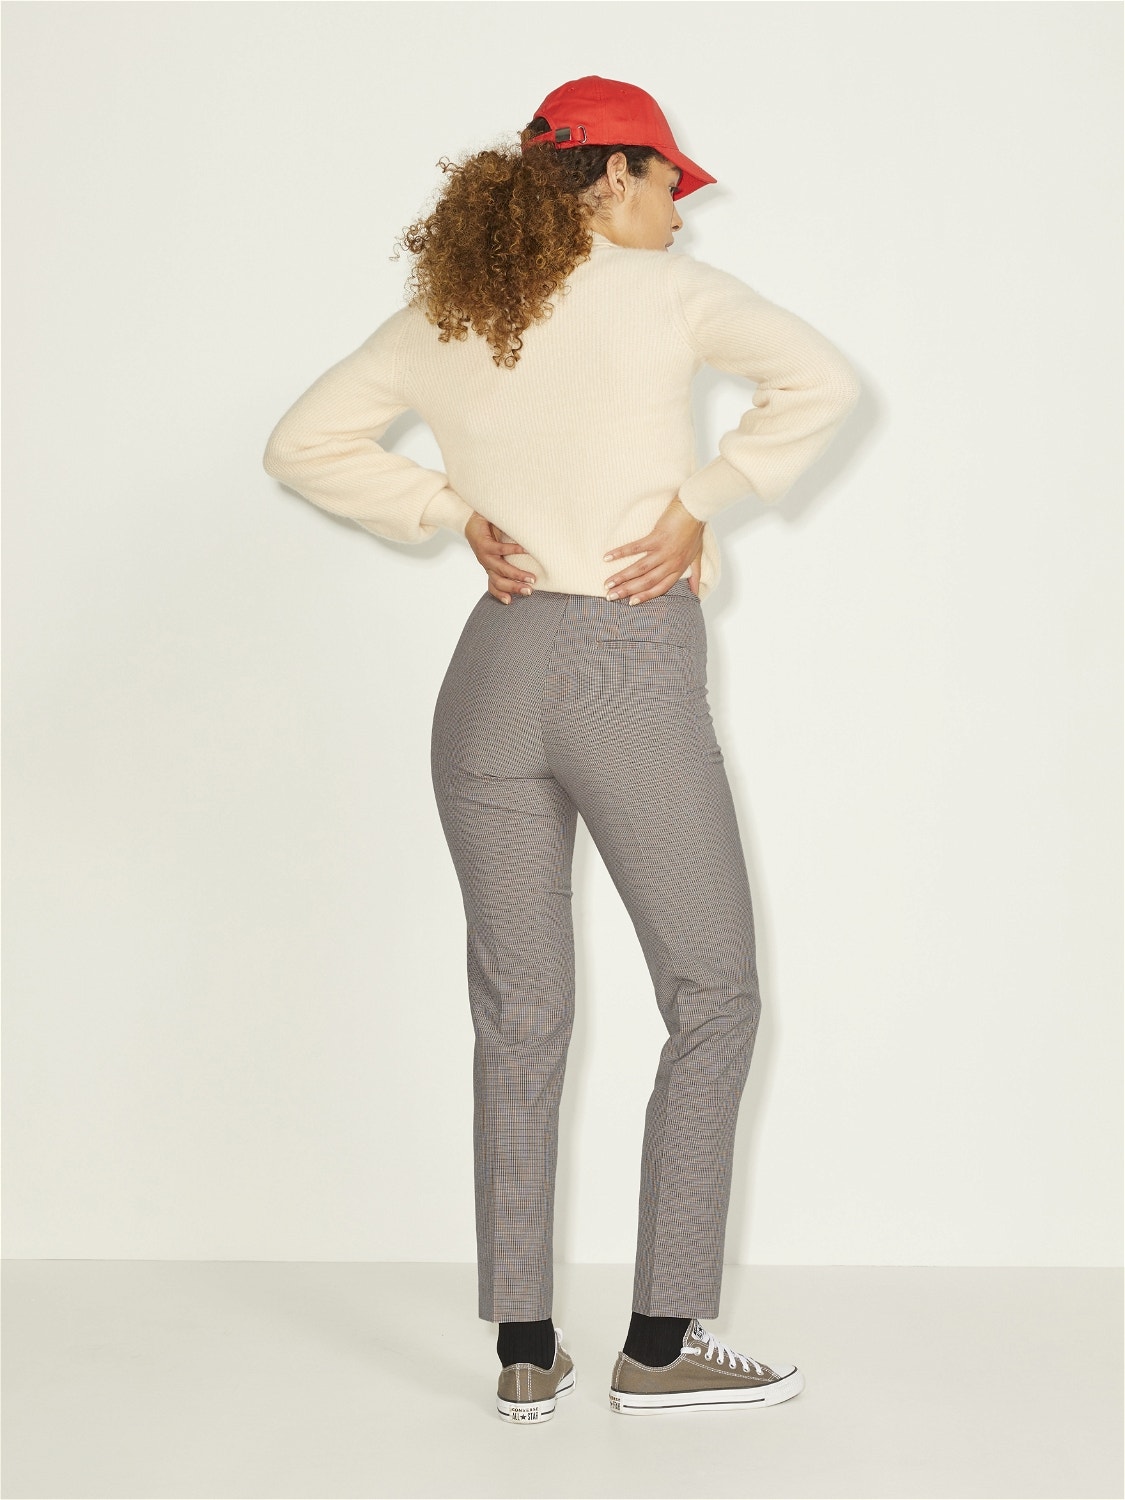 JJXX JXKATIE Classic trousers -Brindle - 12209195